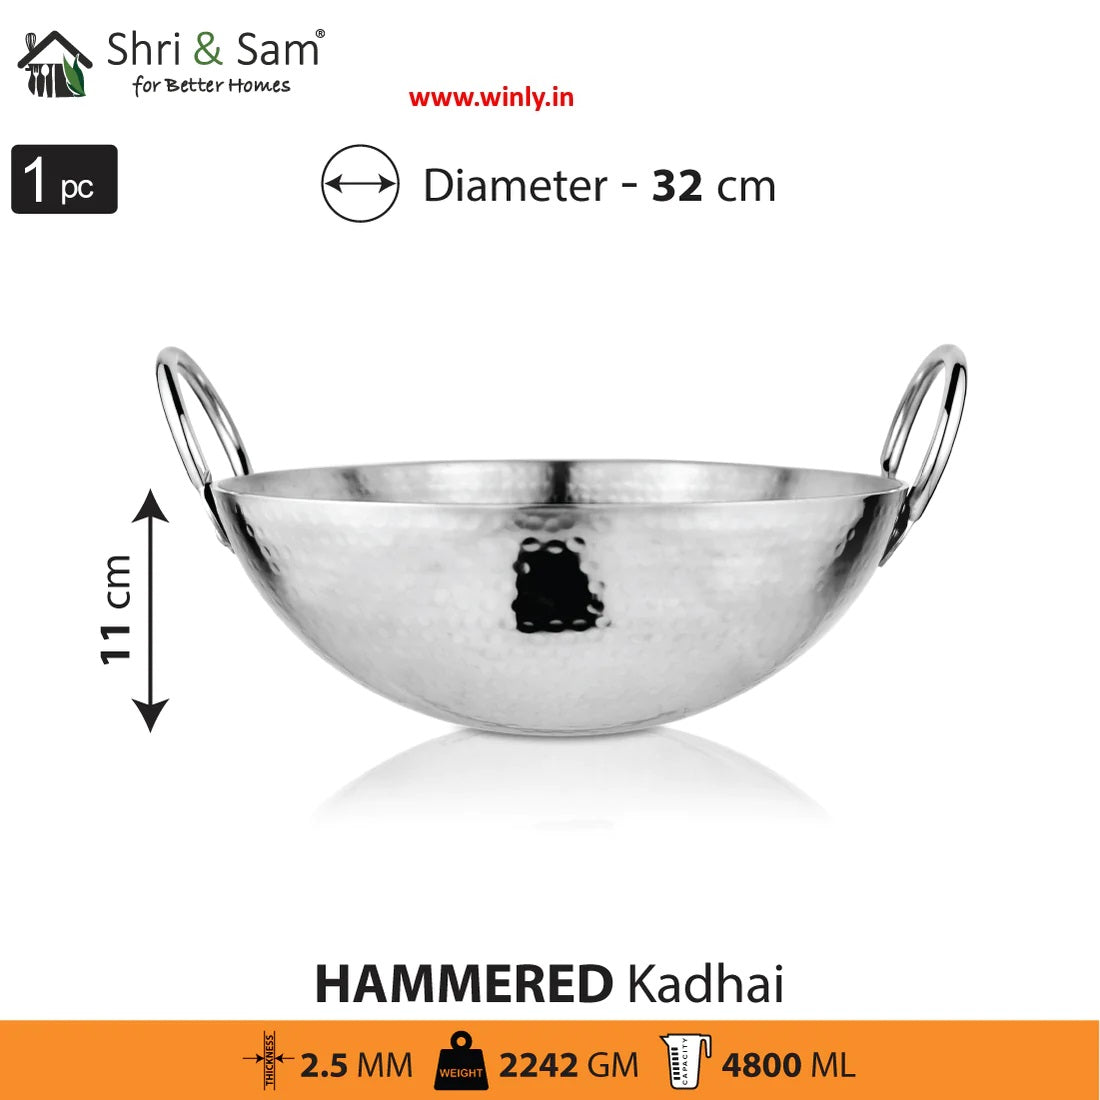 Shri & Sam Stainless Steel Heavy Weight Hammered Kadhai